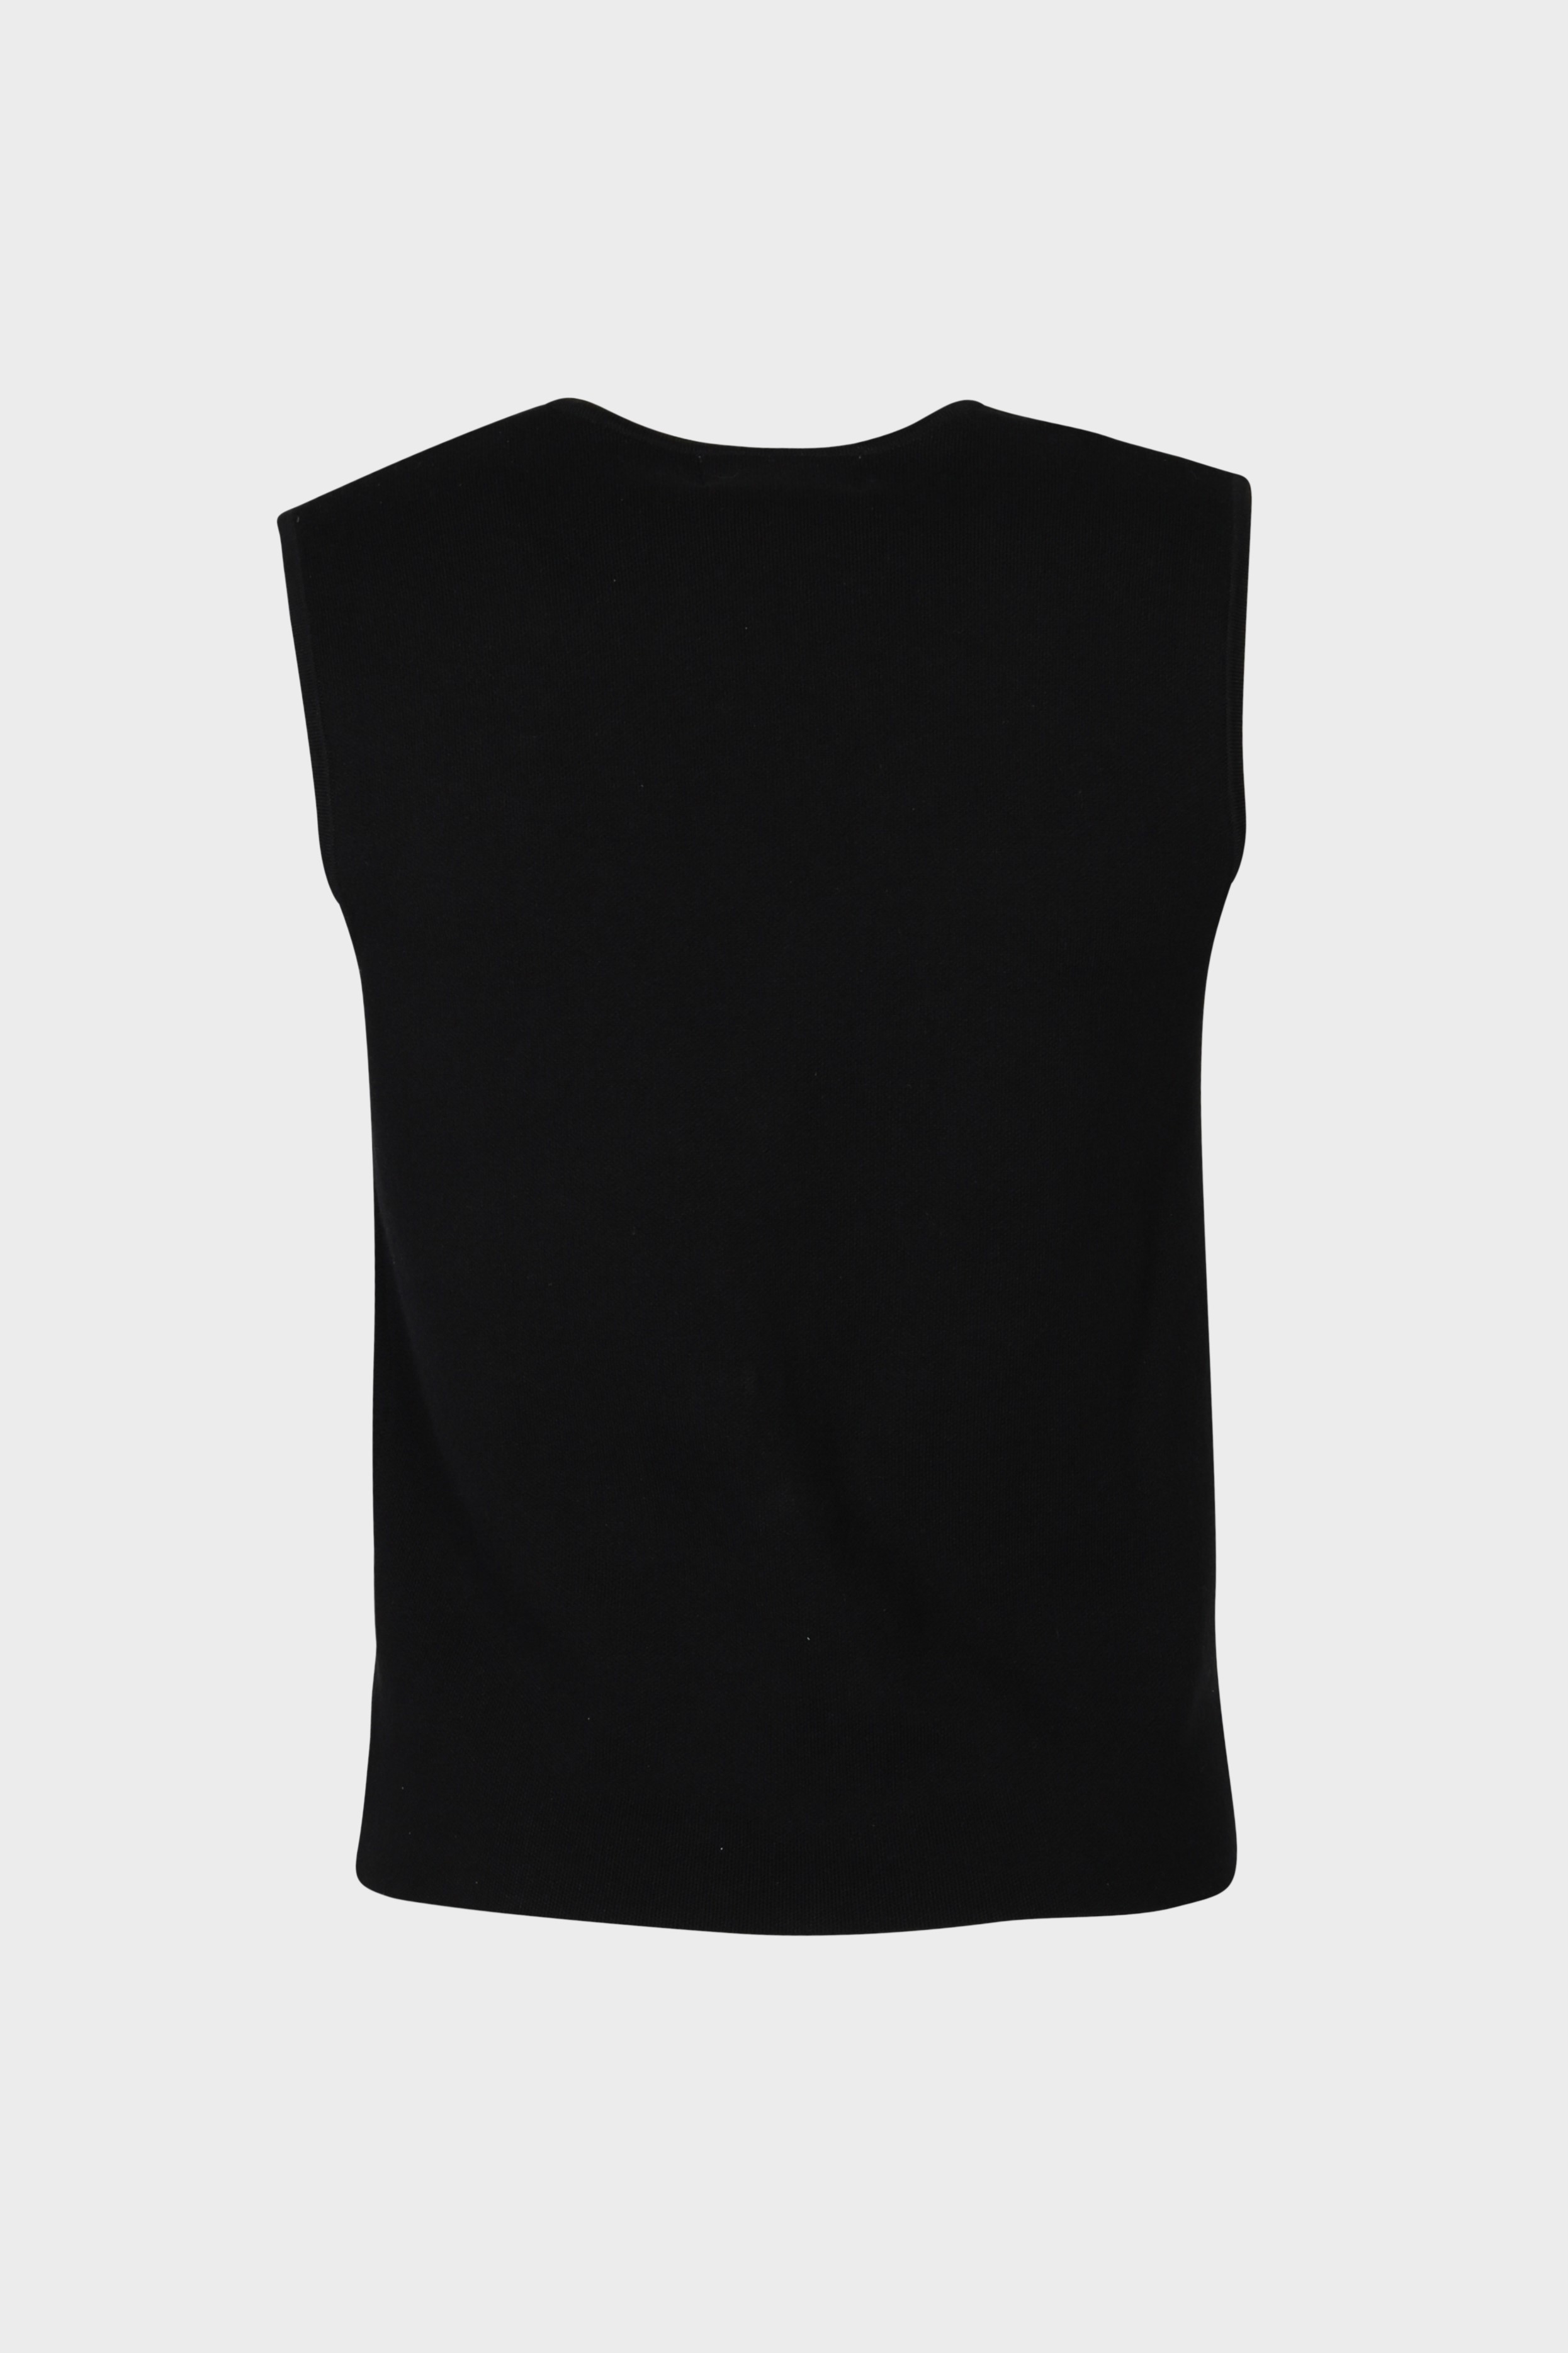 FLONA Cotton/ Cashmere Knit Vest in Black L